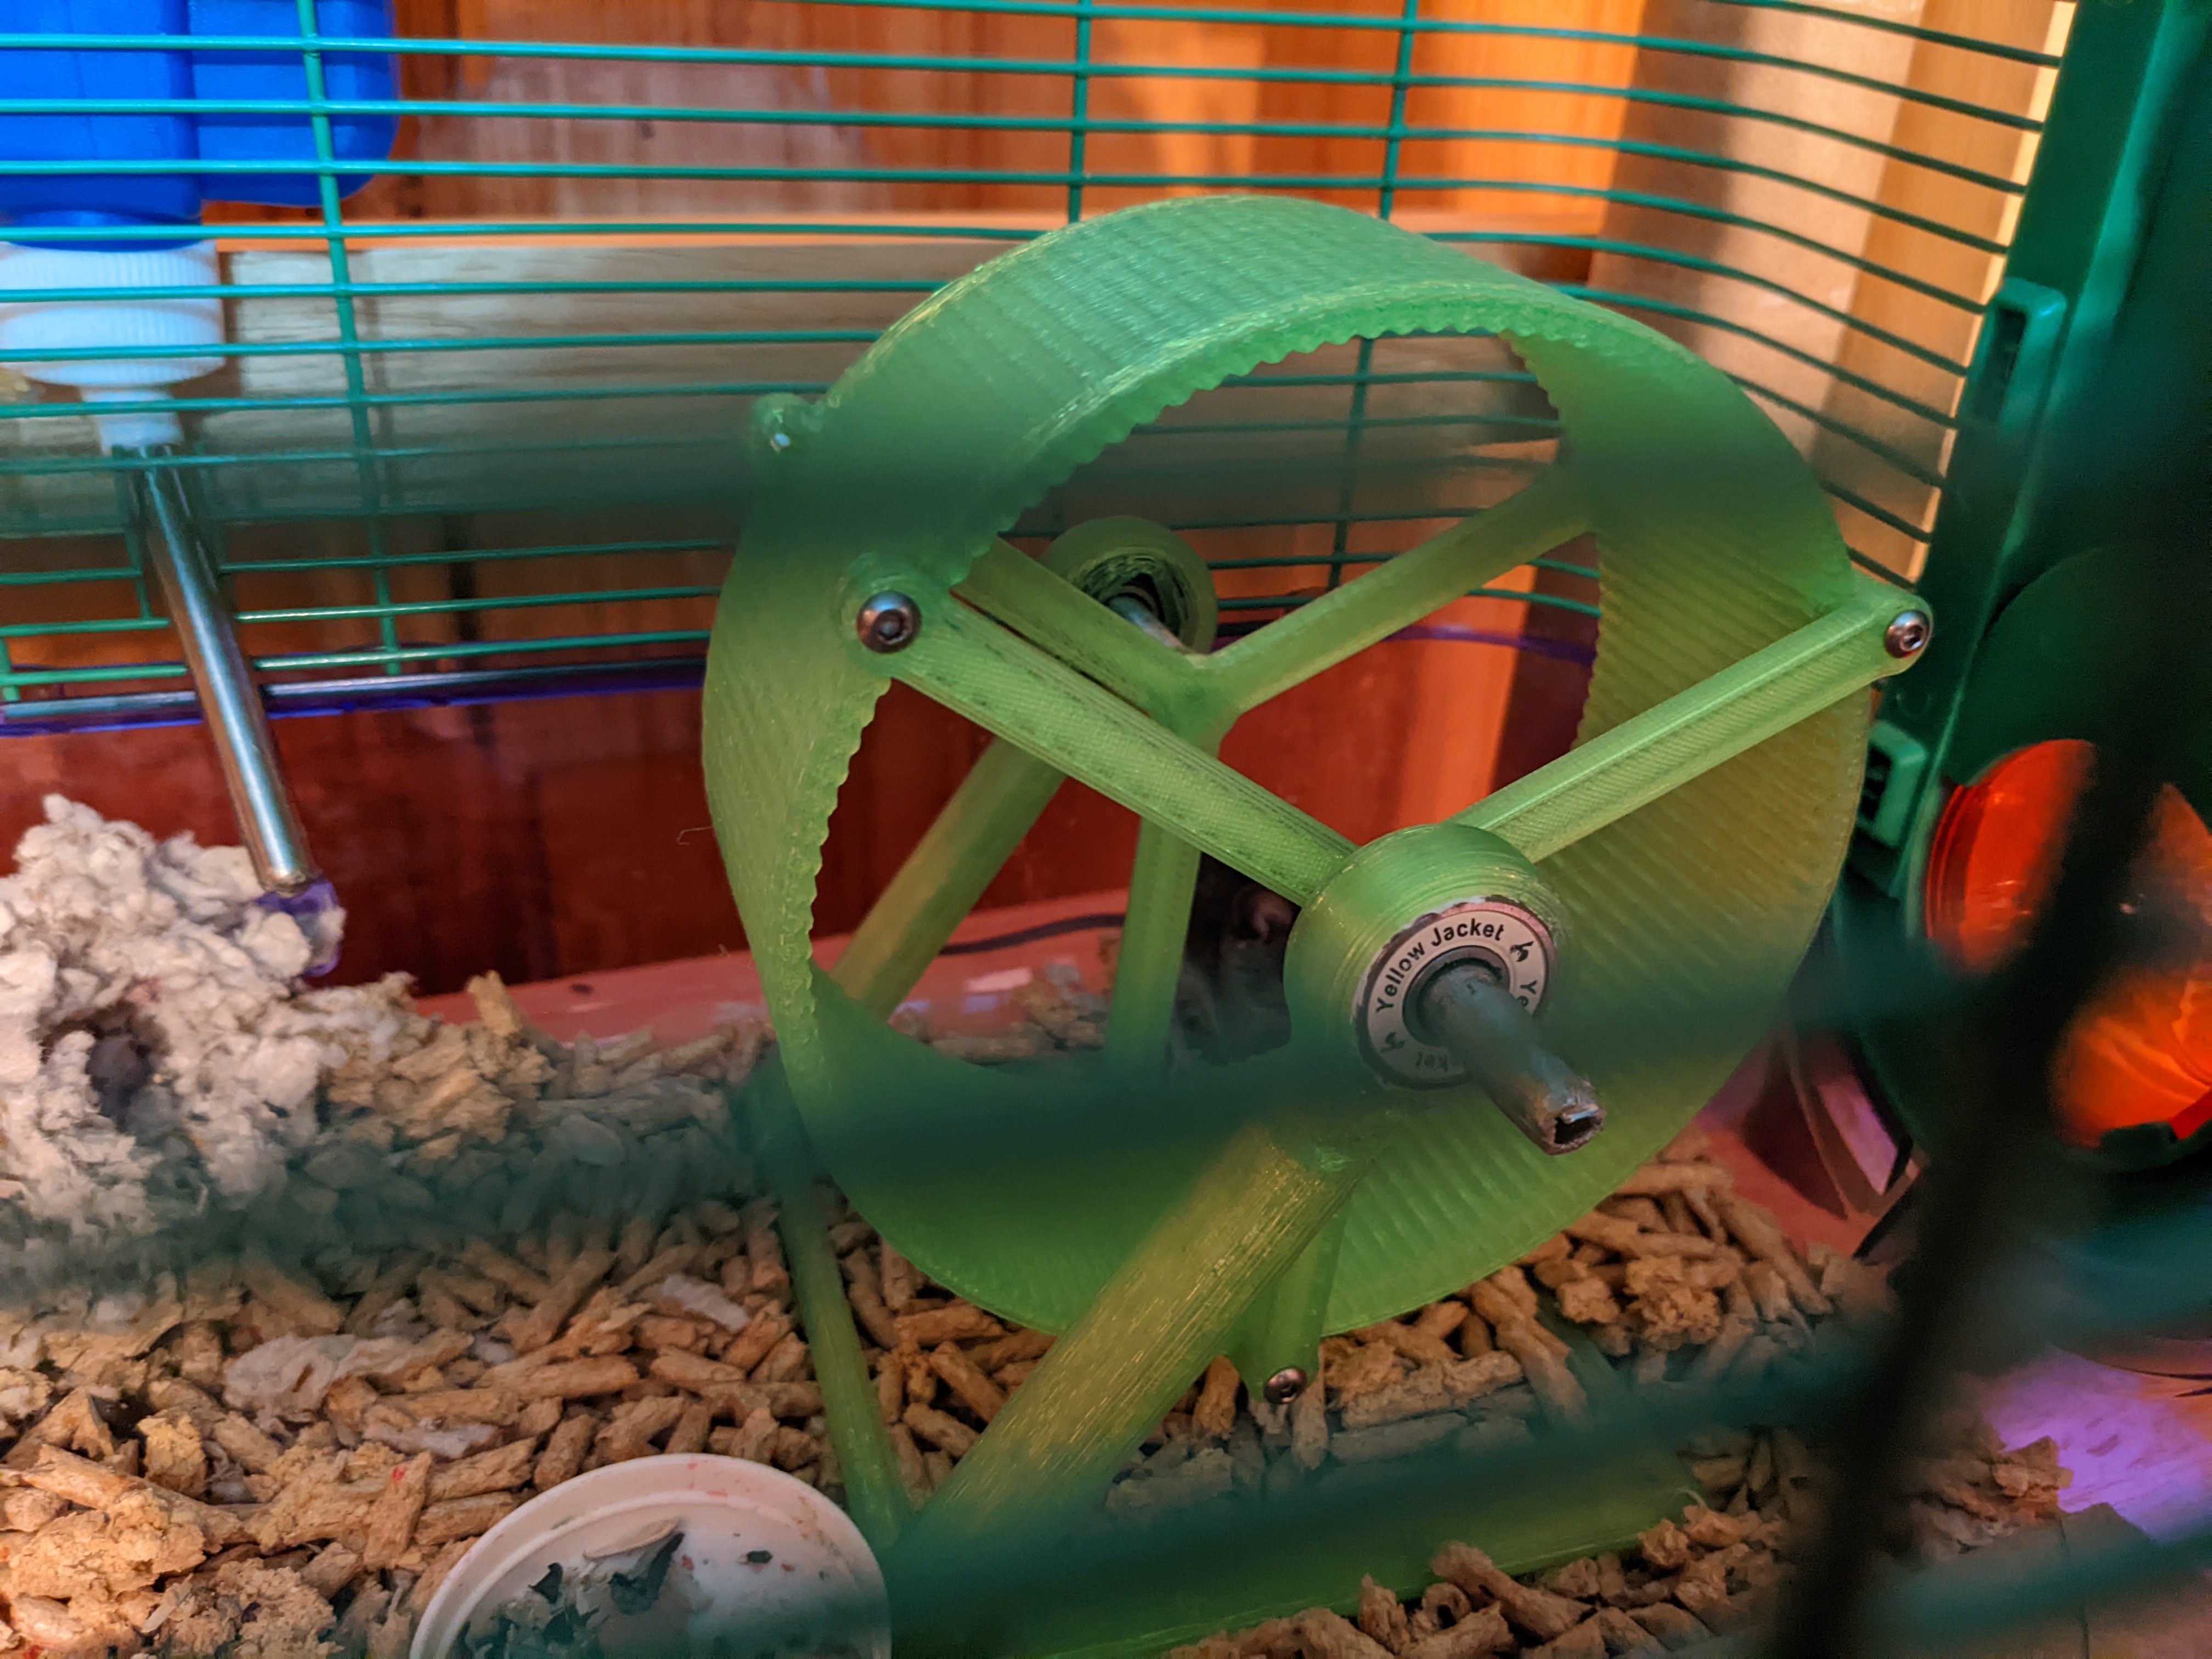 Smaller Reinforced Hamsters Wheel